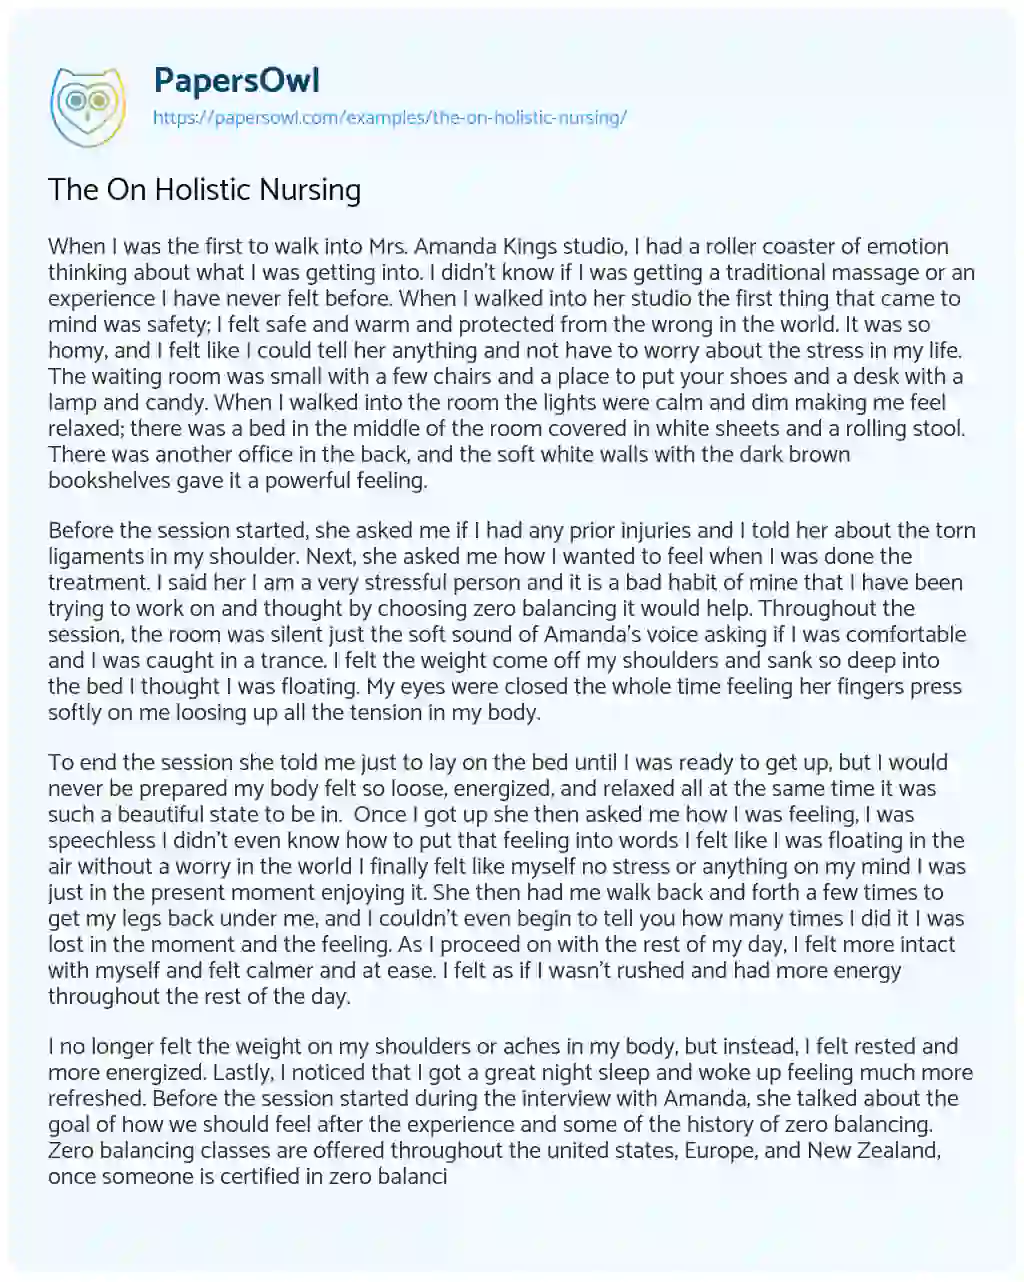 Essay on The on Holistic Nursing